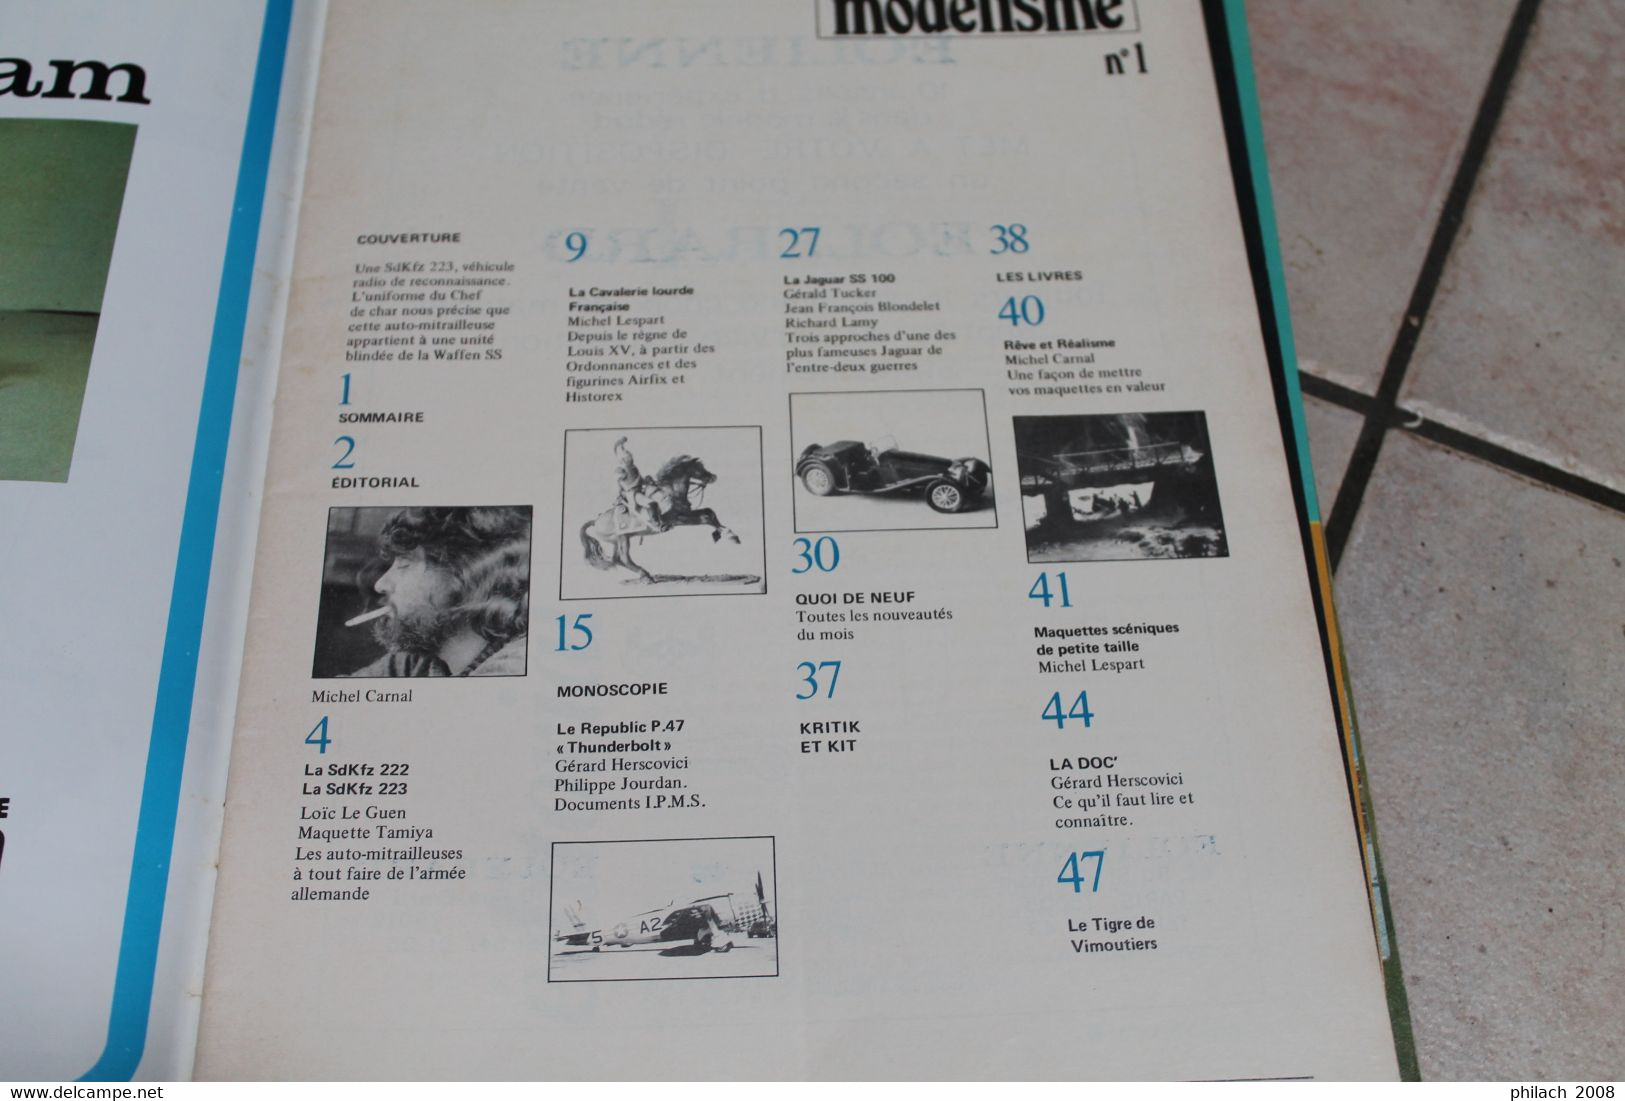 Revue L'univers Du Modélisme De Février 1976 Numéro 1 - Frankrijk